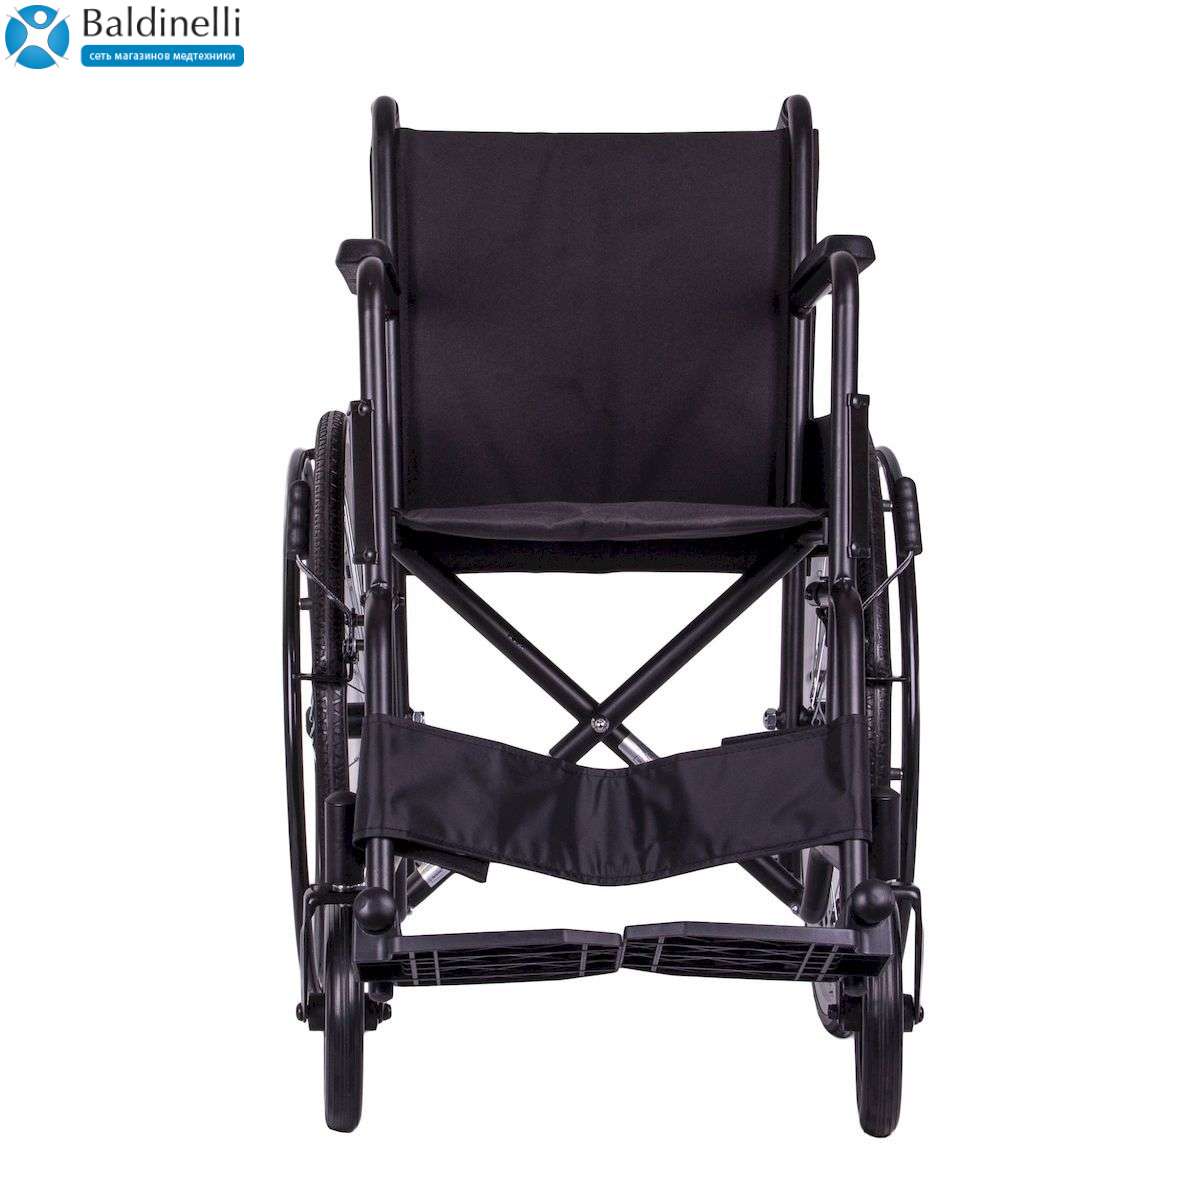 Стандартная инвалидная коляска OSD Economy1 на литых колесах